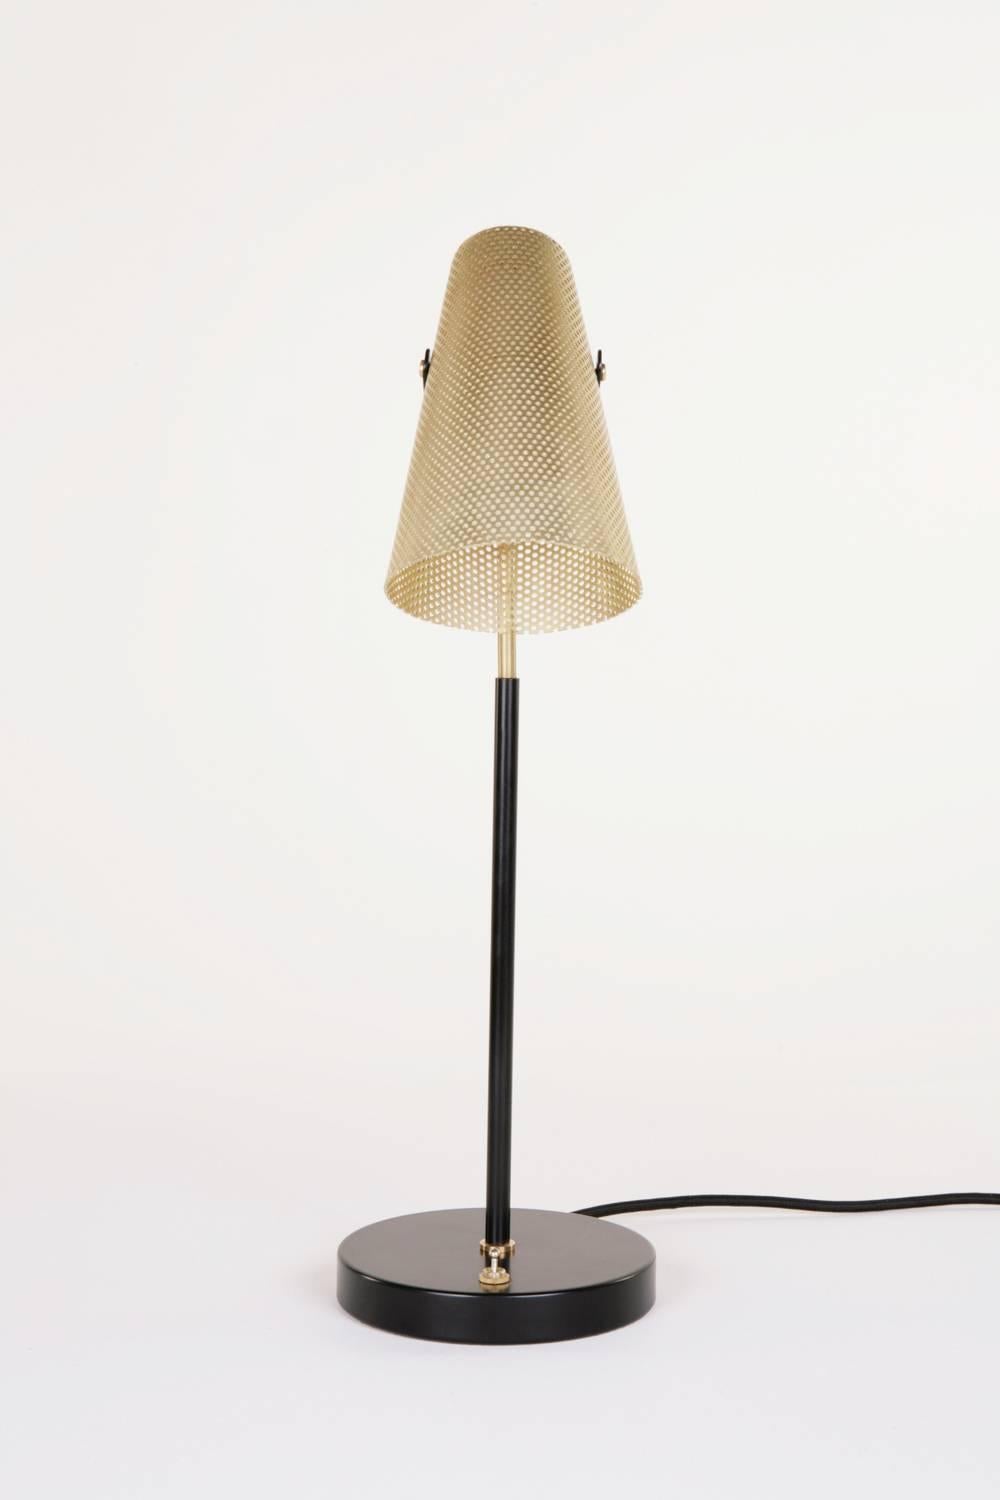 Inspirée par la simplicité des éperons équestres, la lampe Eperon présente un abat-jour en laiton perforé sur une tige en laiton, avec une base enduite de poudre noire. Cette lampe de bureau unique offre une lumière directionnelle, tout en émettant